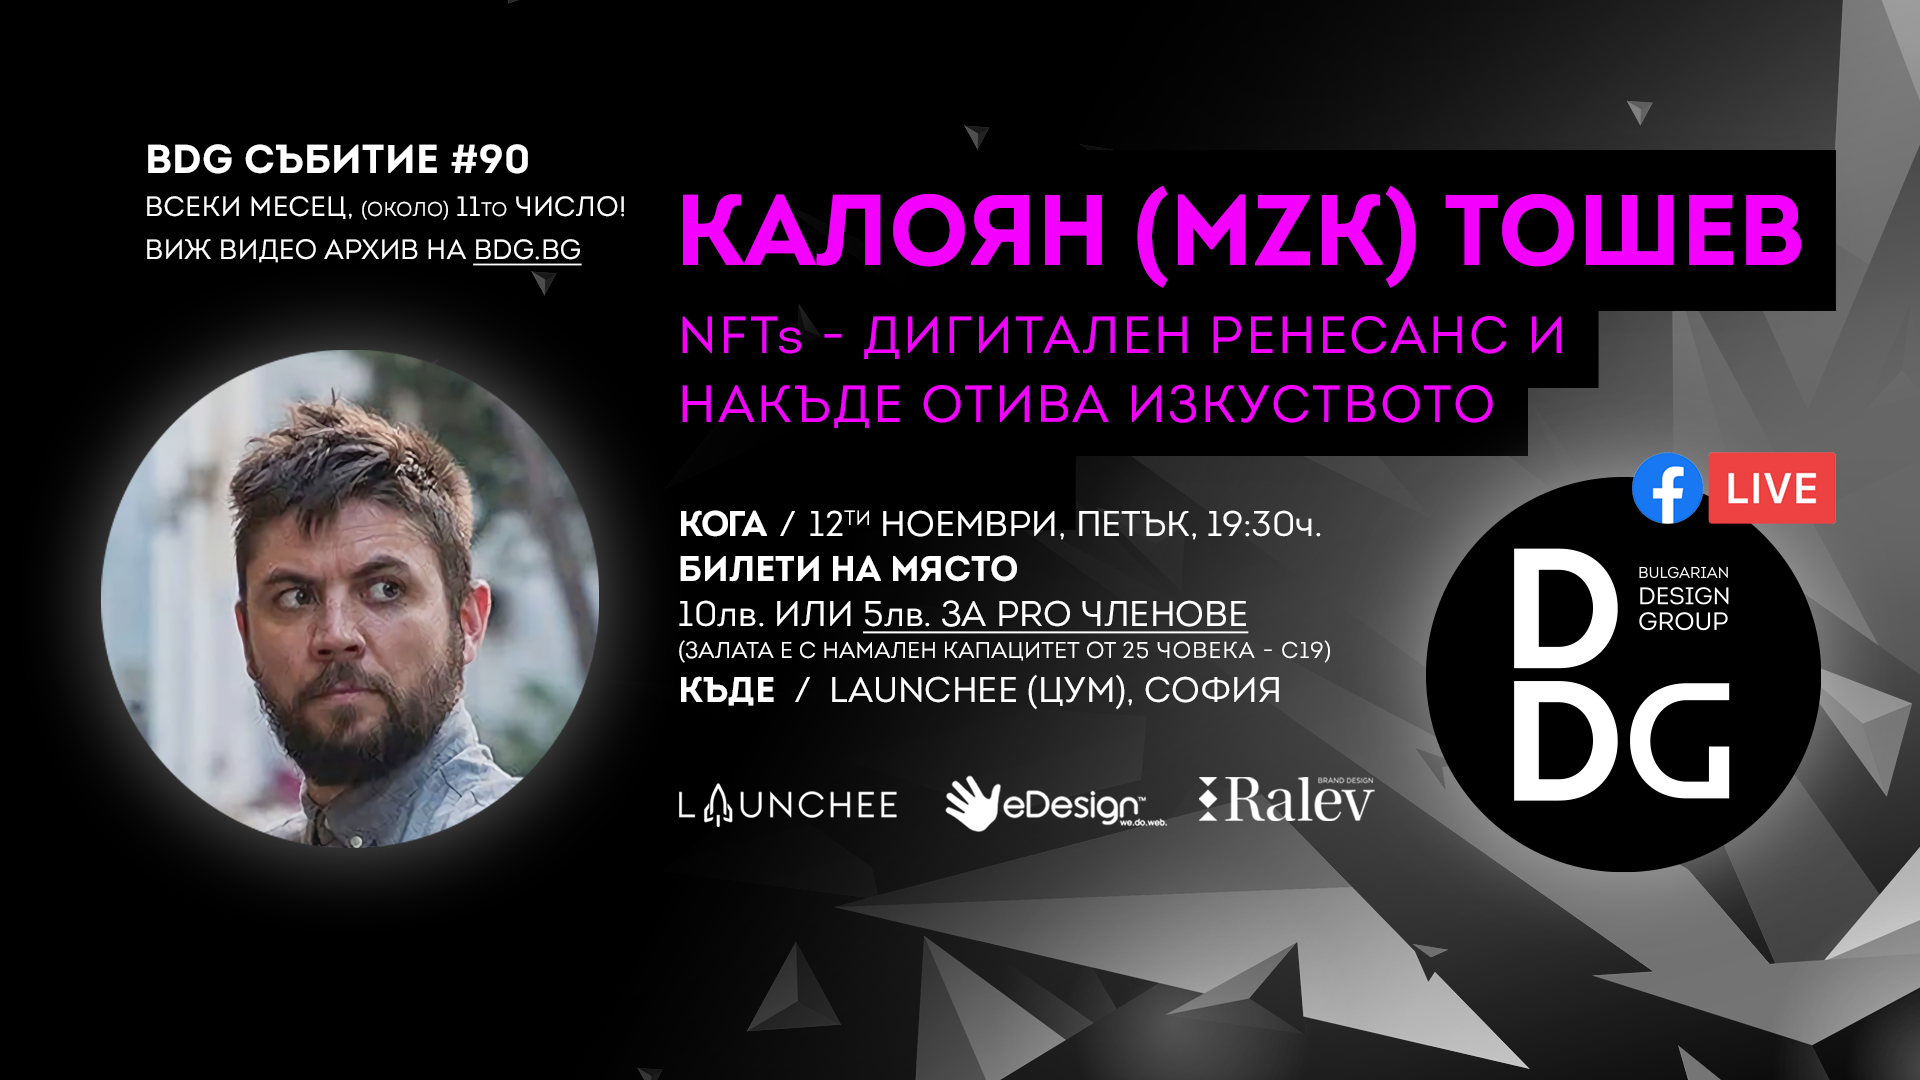 Event with Kaloyan Toshev - NFT art & design